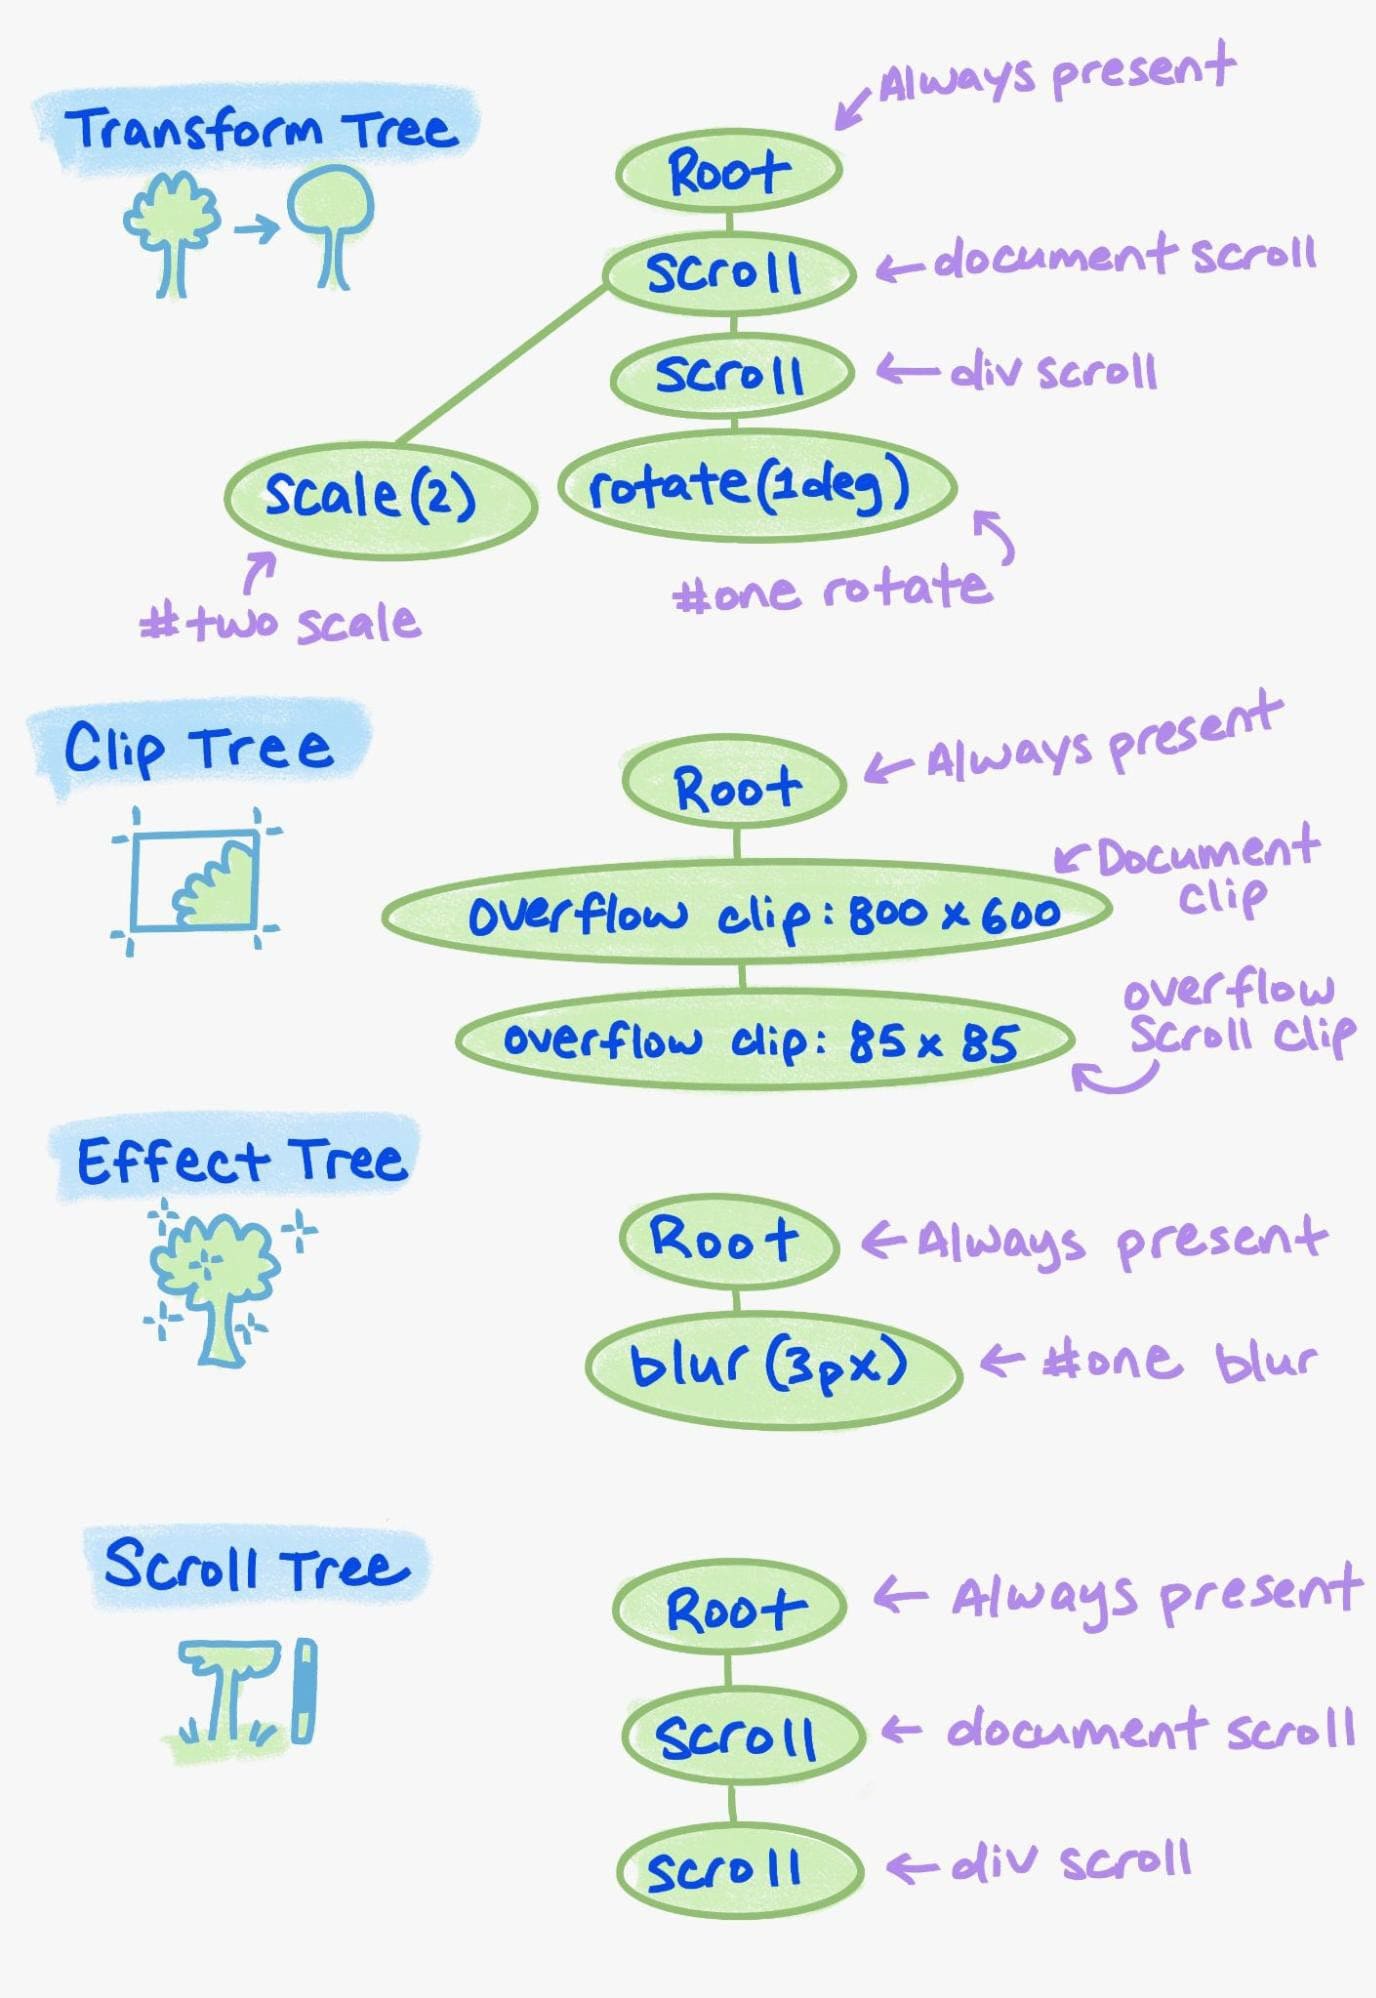 مثال على العناصر المختلفة في شجرة الخصائص.